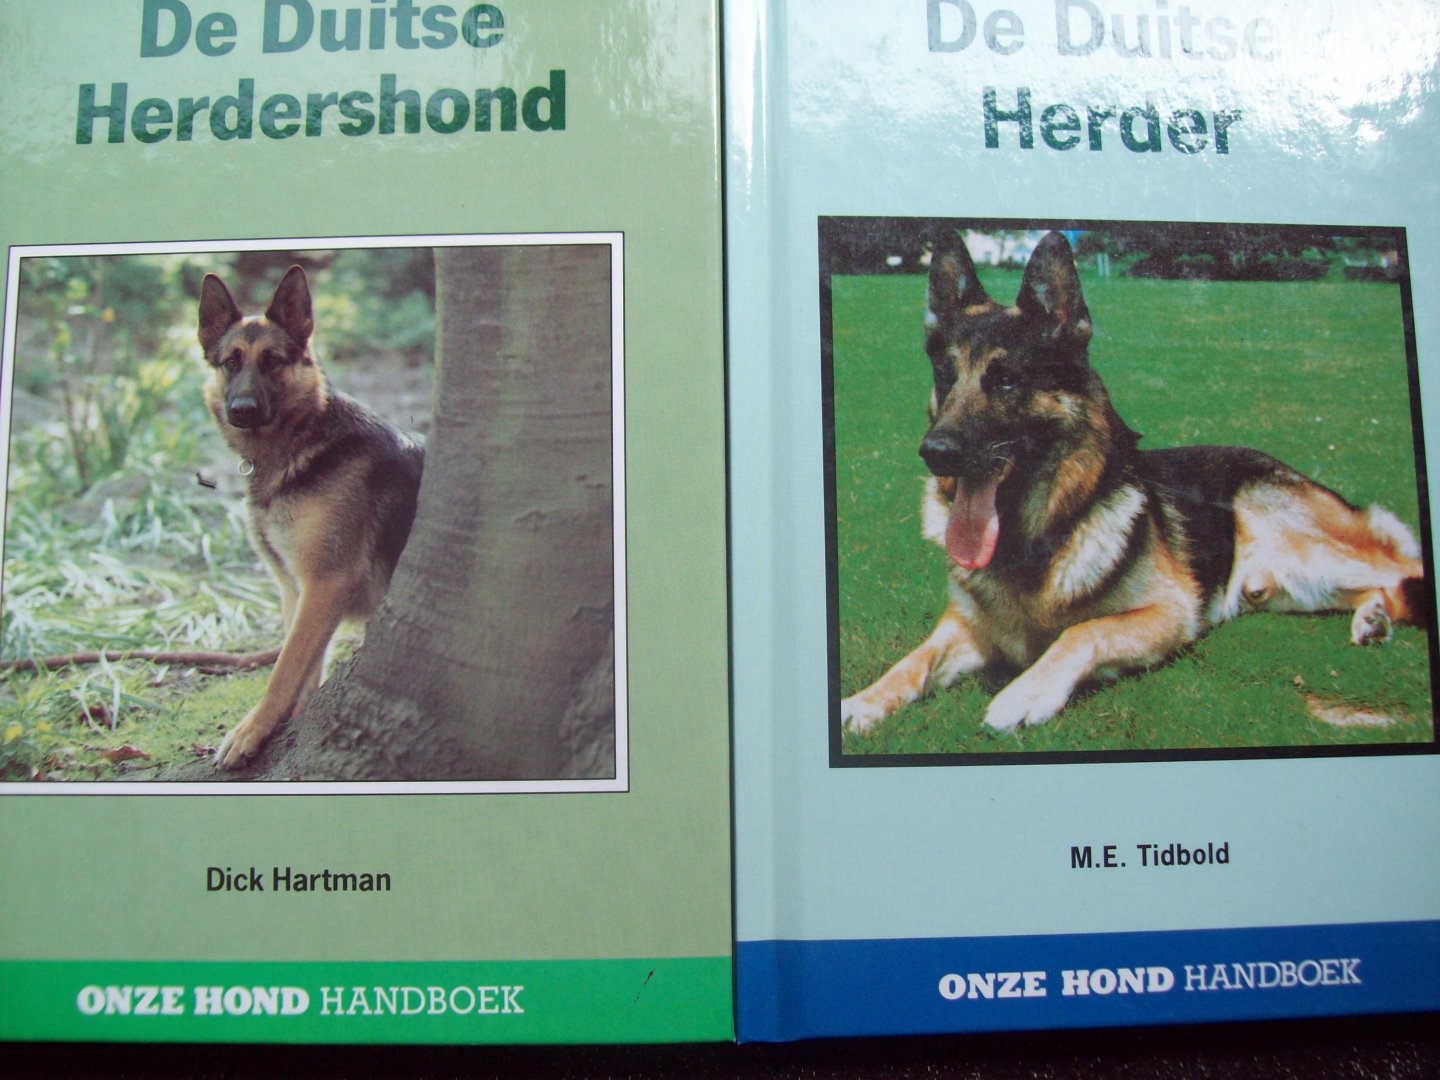 M.E. Tidbold - "De Duitse Herder" + "De Duitse Herdershond"